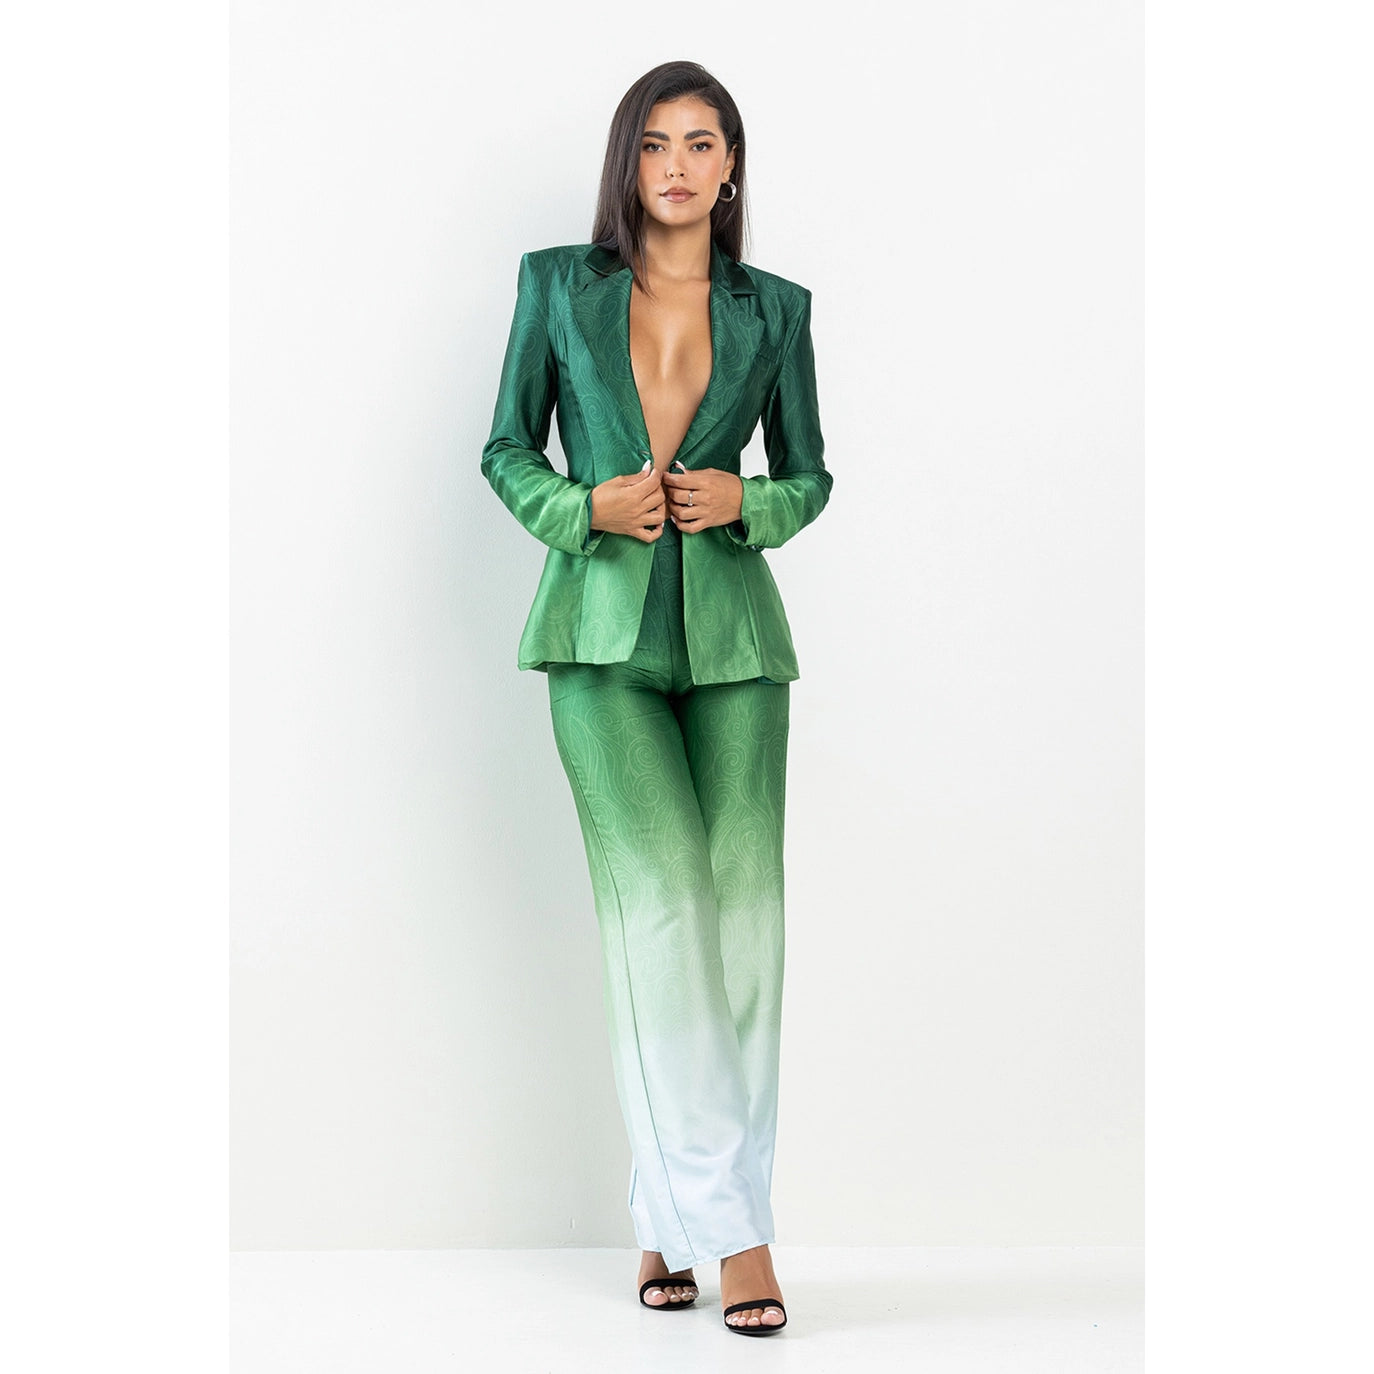 The Green Ombré Suit